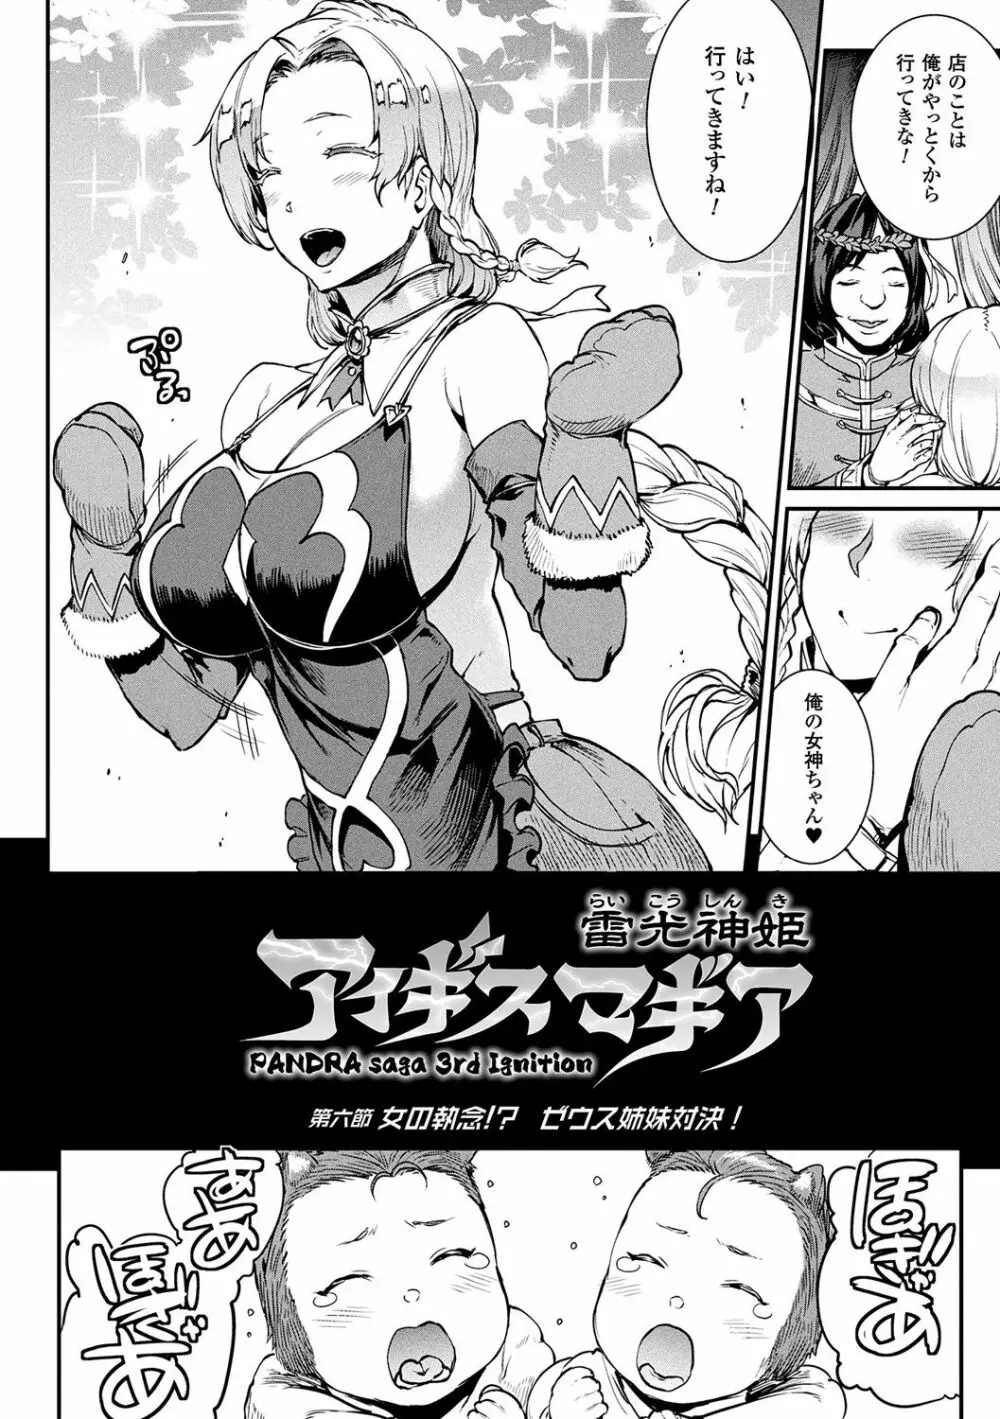 雷光神姫アイギスマギア -PANDRA saga 3rd ignition- 140ページ